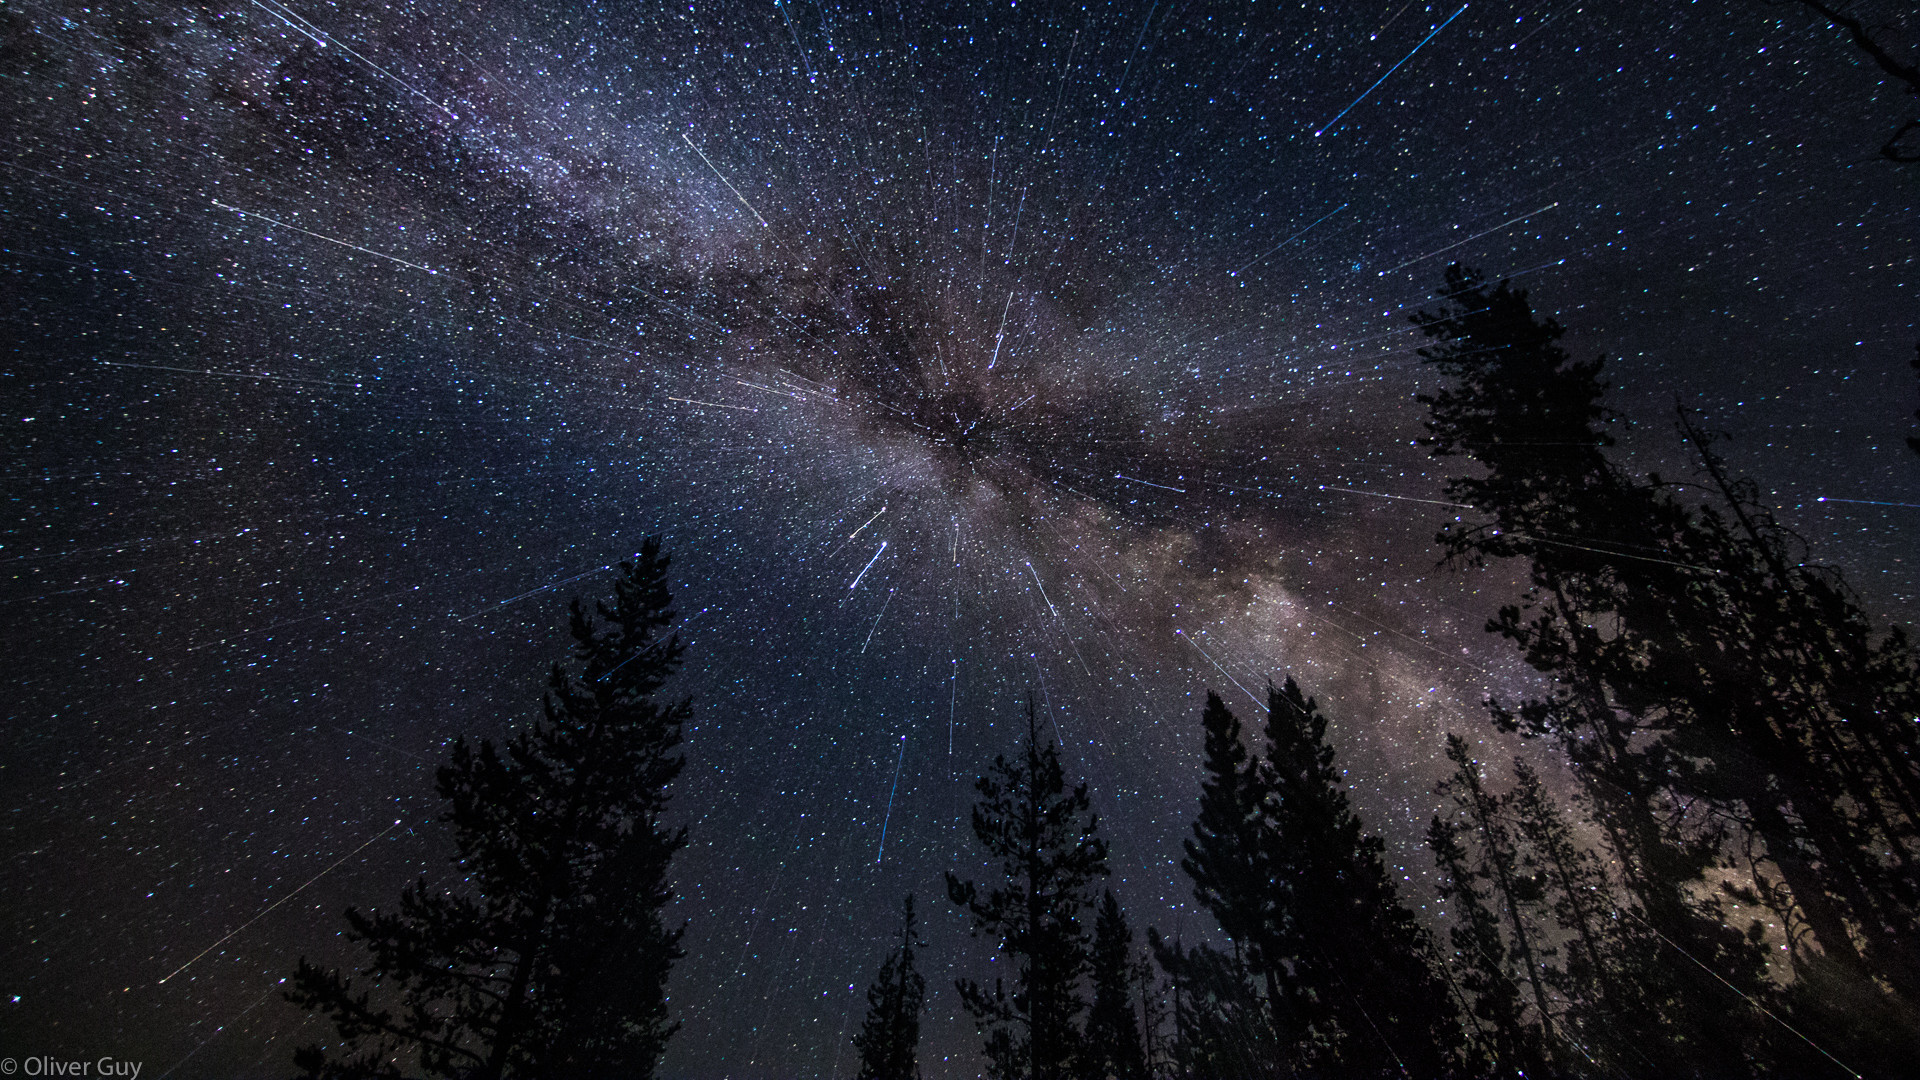 Central Idaho Dark Sky Reserve